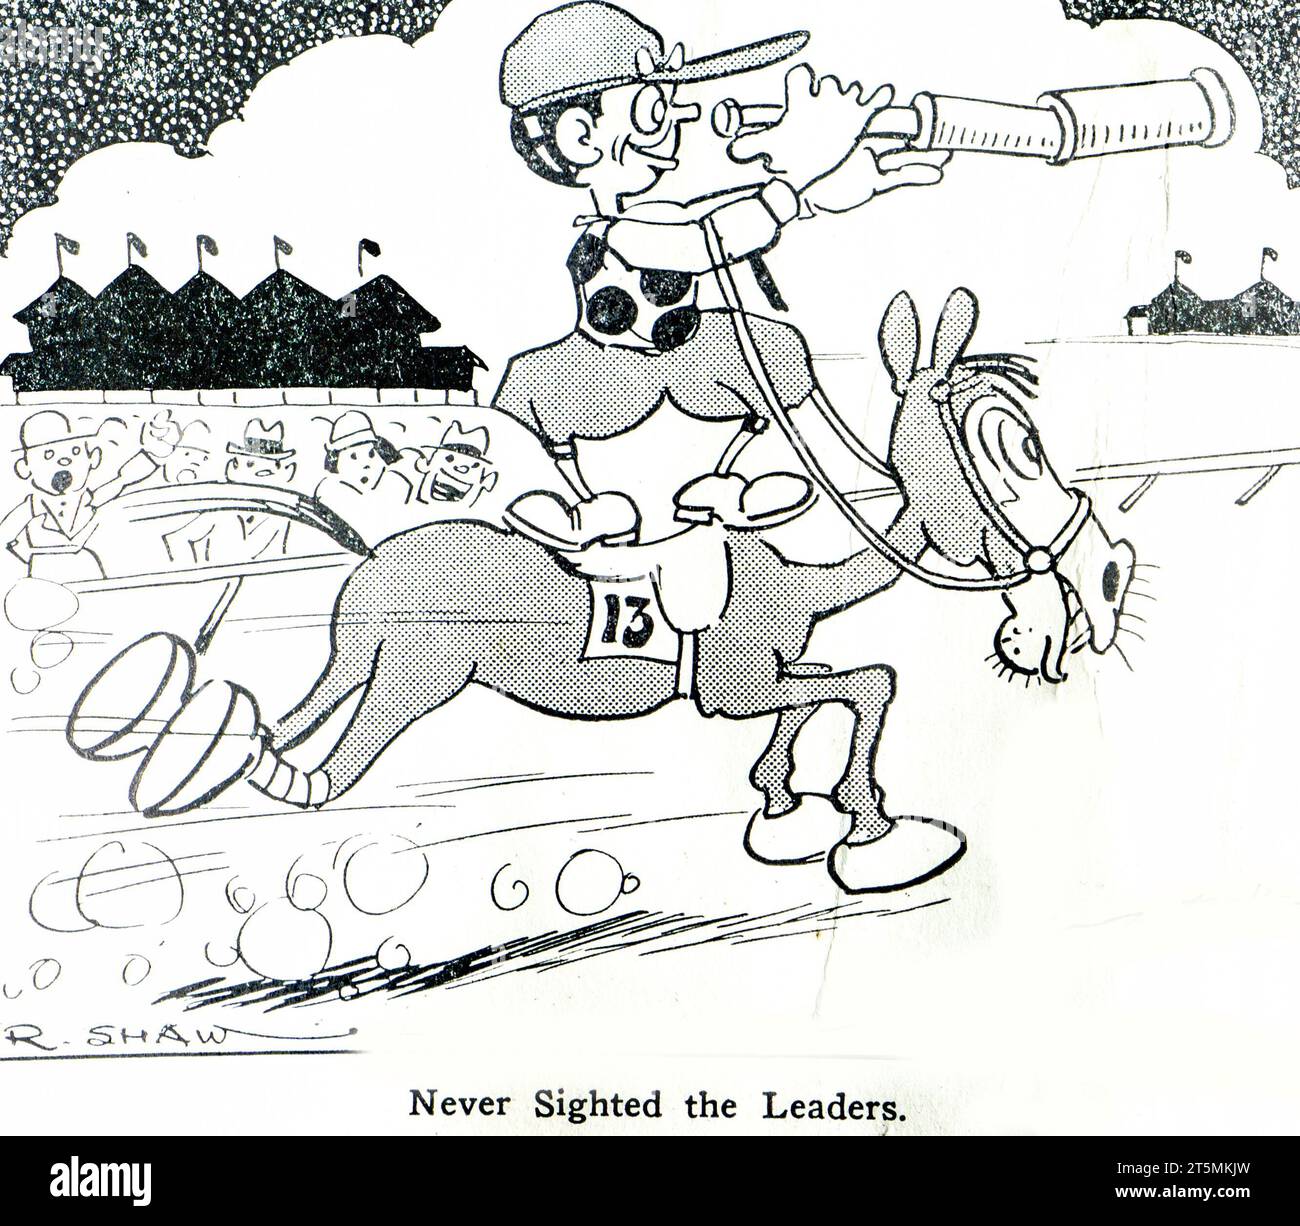 Un dessin animé de 1934 montrant le dernier cheval de la course, numéro 13, avec le jockey tenant un télescope. La légende indique que les dirigeants n’ont jamais vu » prouvant que quelque chose ne change jamais. Banque D'Images